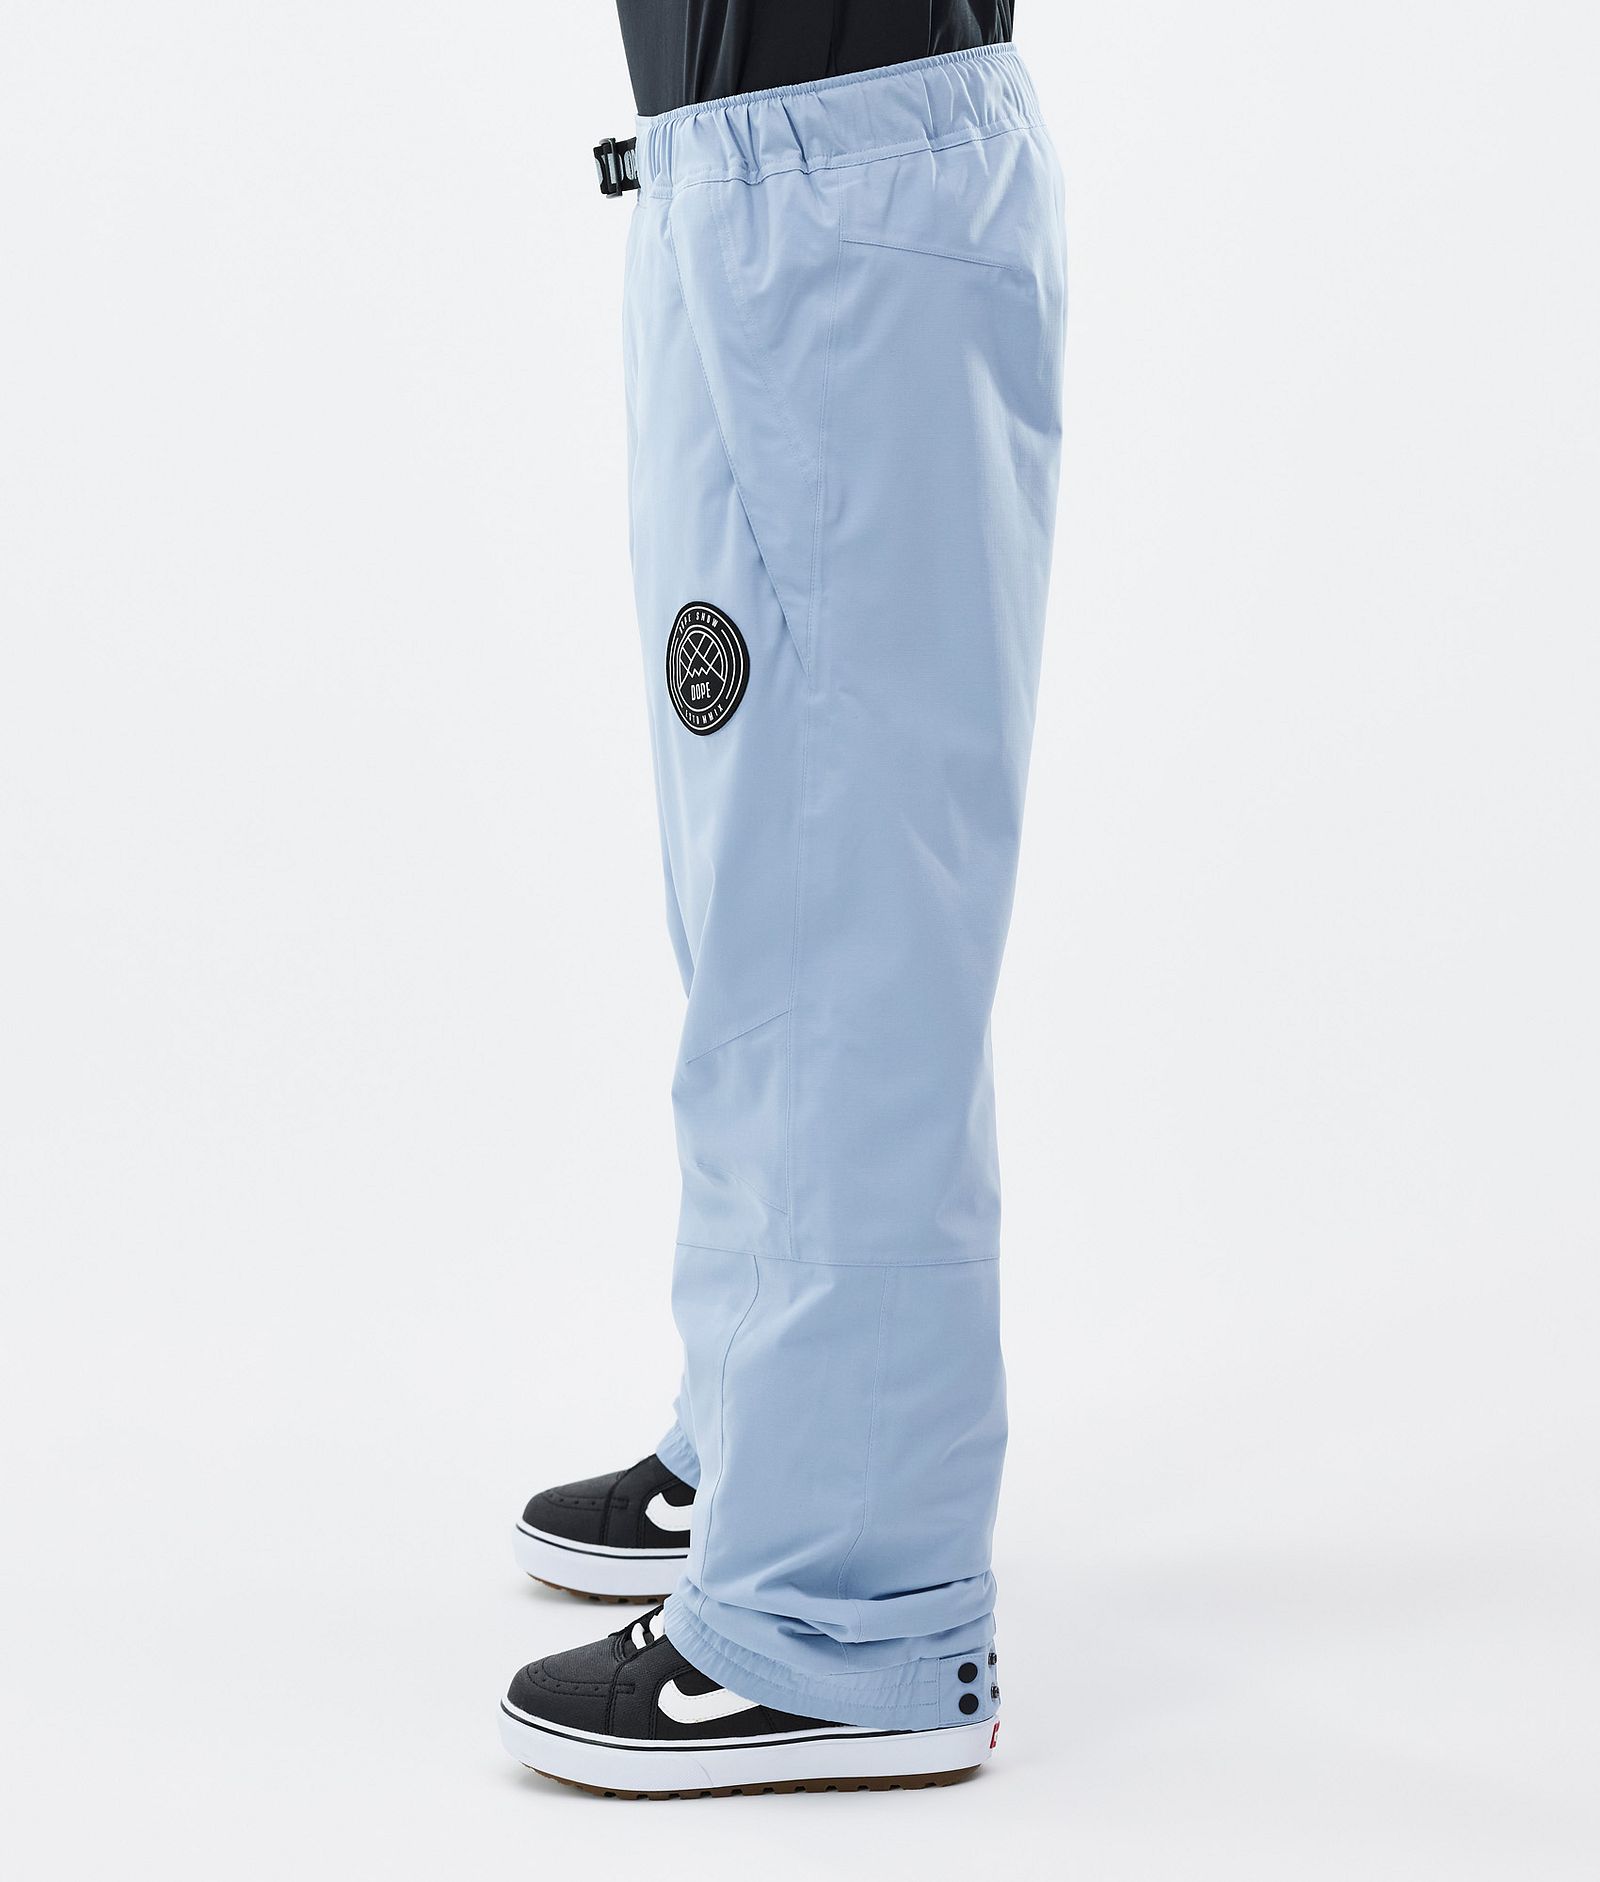 Dope Blizzard Pantaloni Snowboard Uomo Light Blue, Immagine 3 di 5